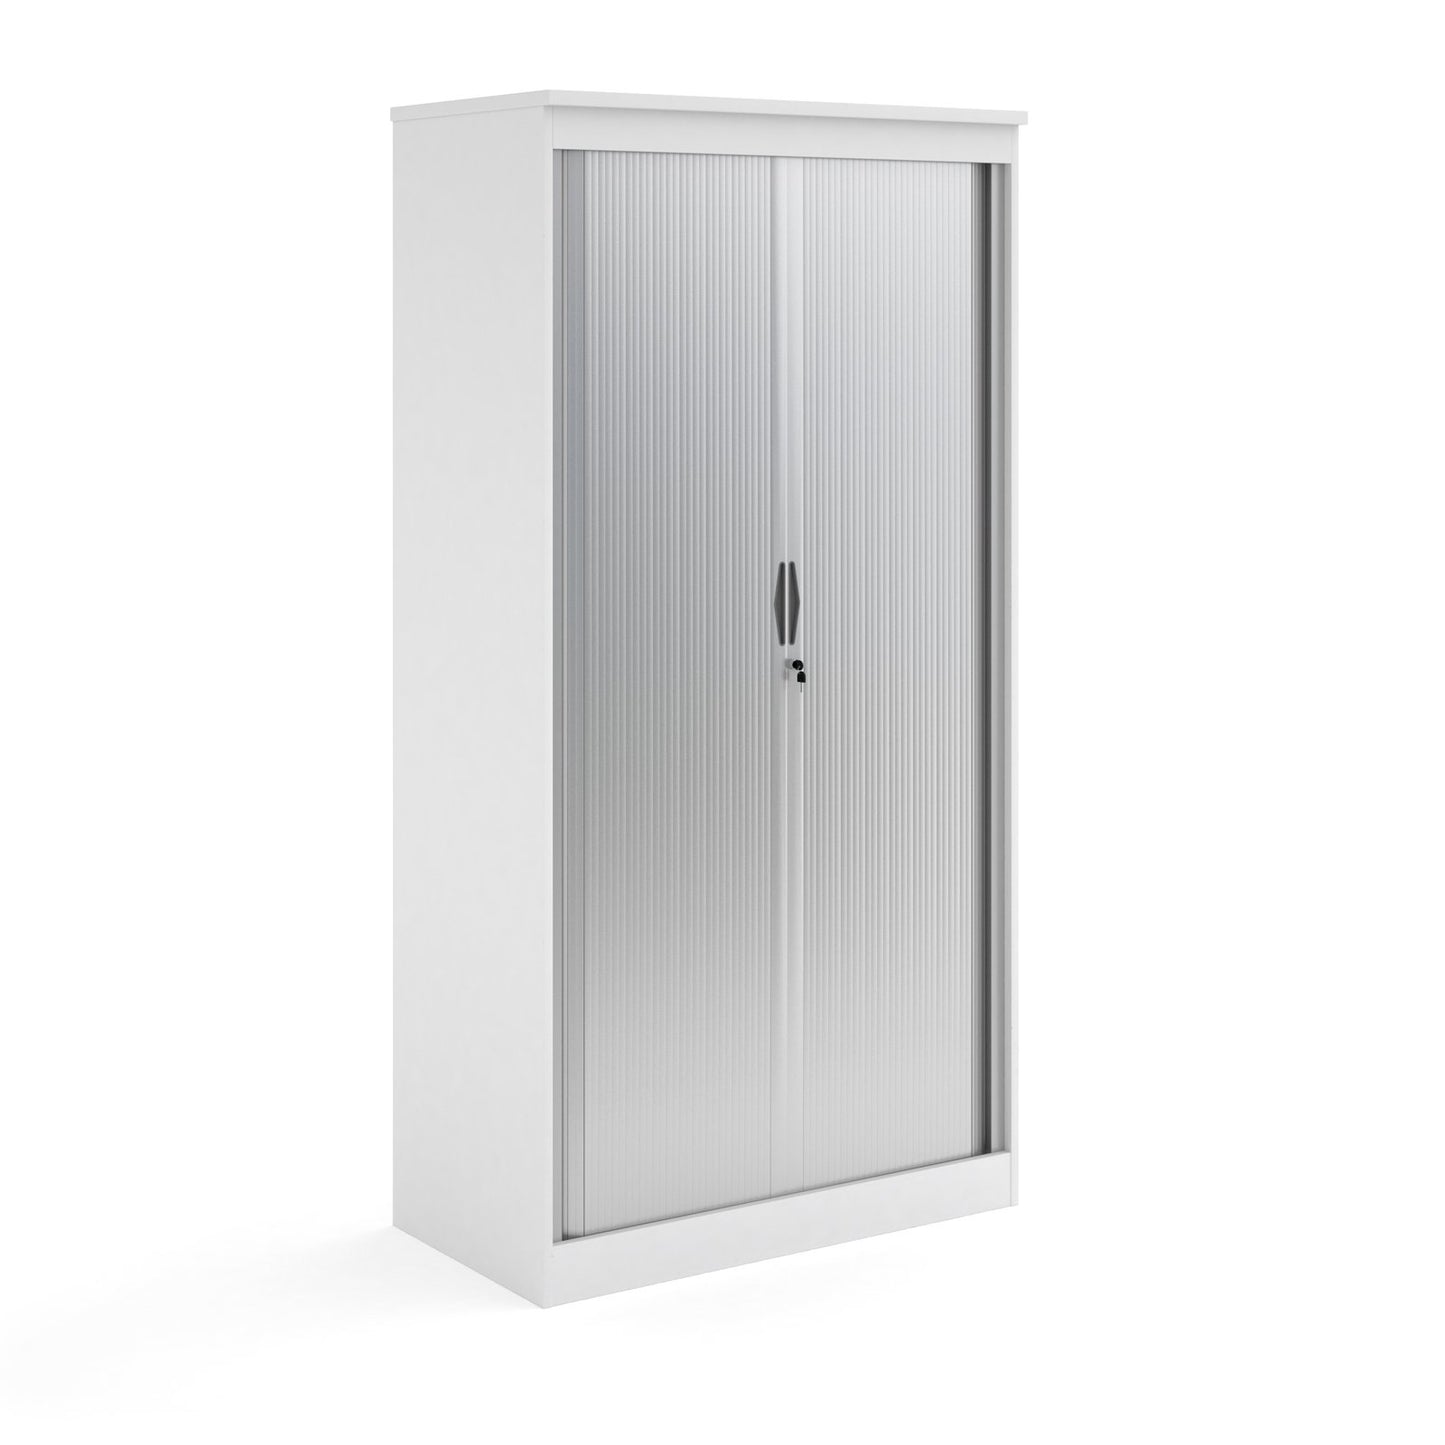 Systems Horizontal Tambour Door Cupboard 1200mm High - Oak